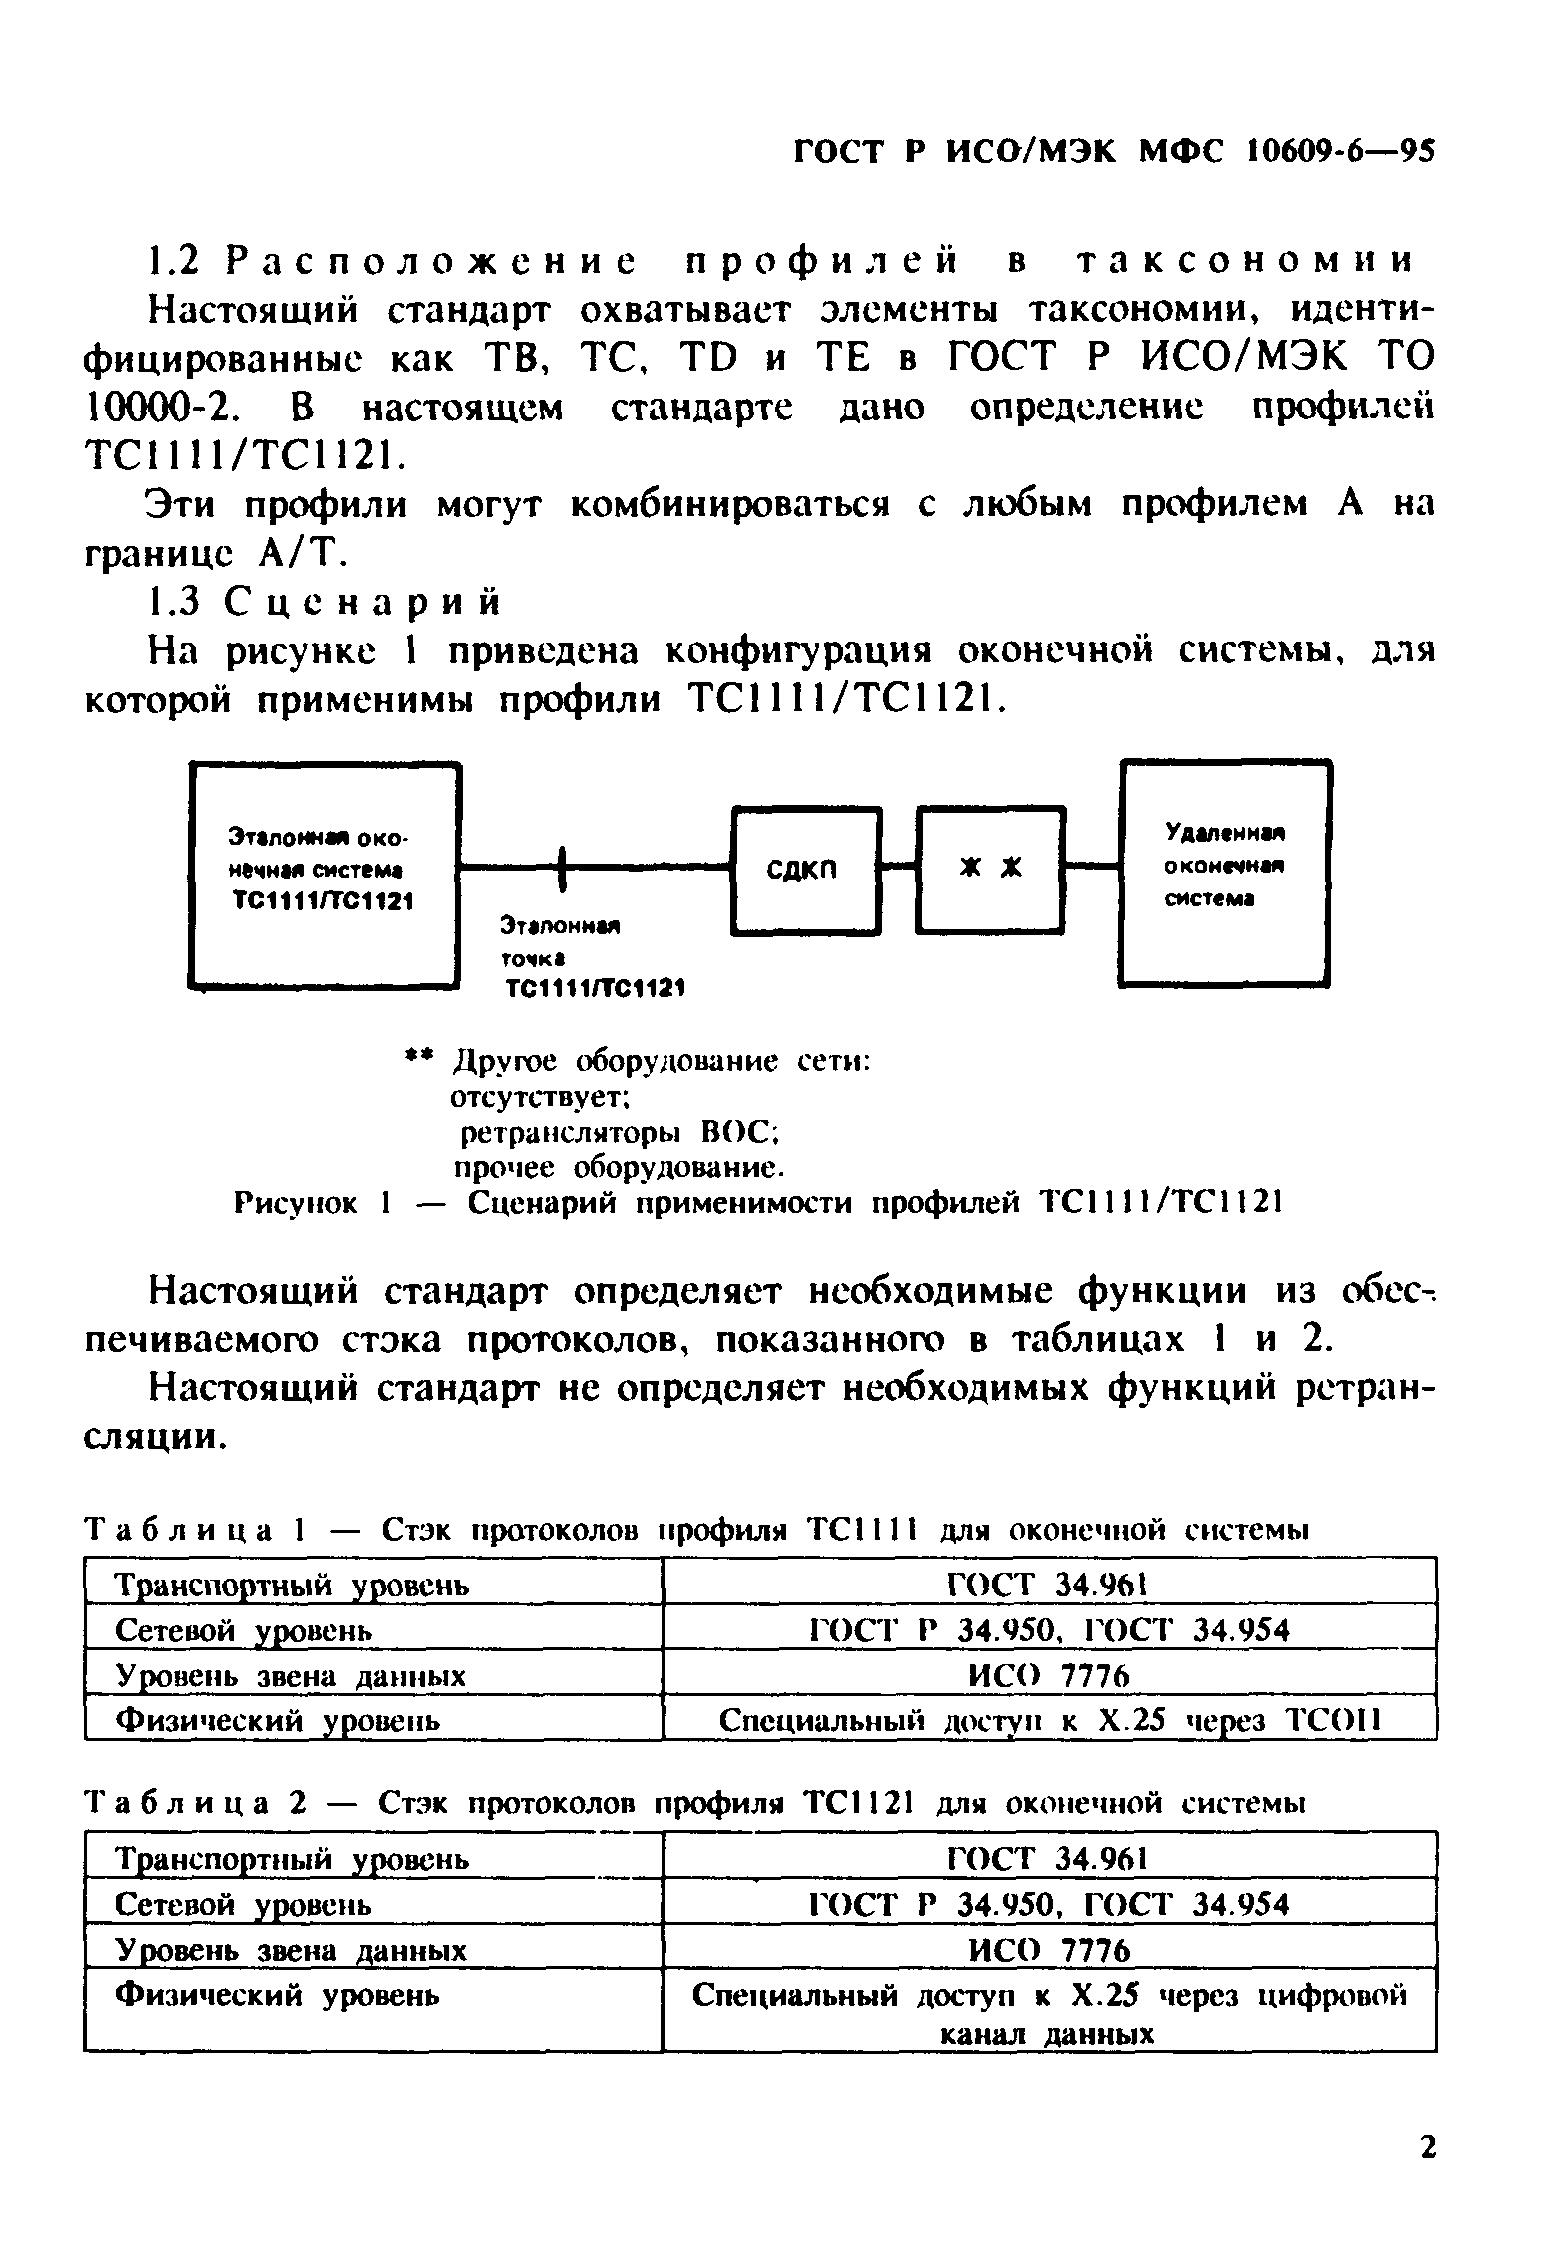 ГОСТ Р ИСО/МЭК МФС 10609-6-95